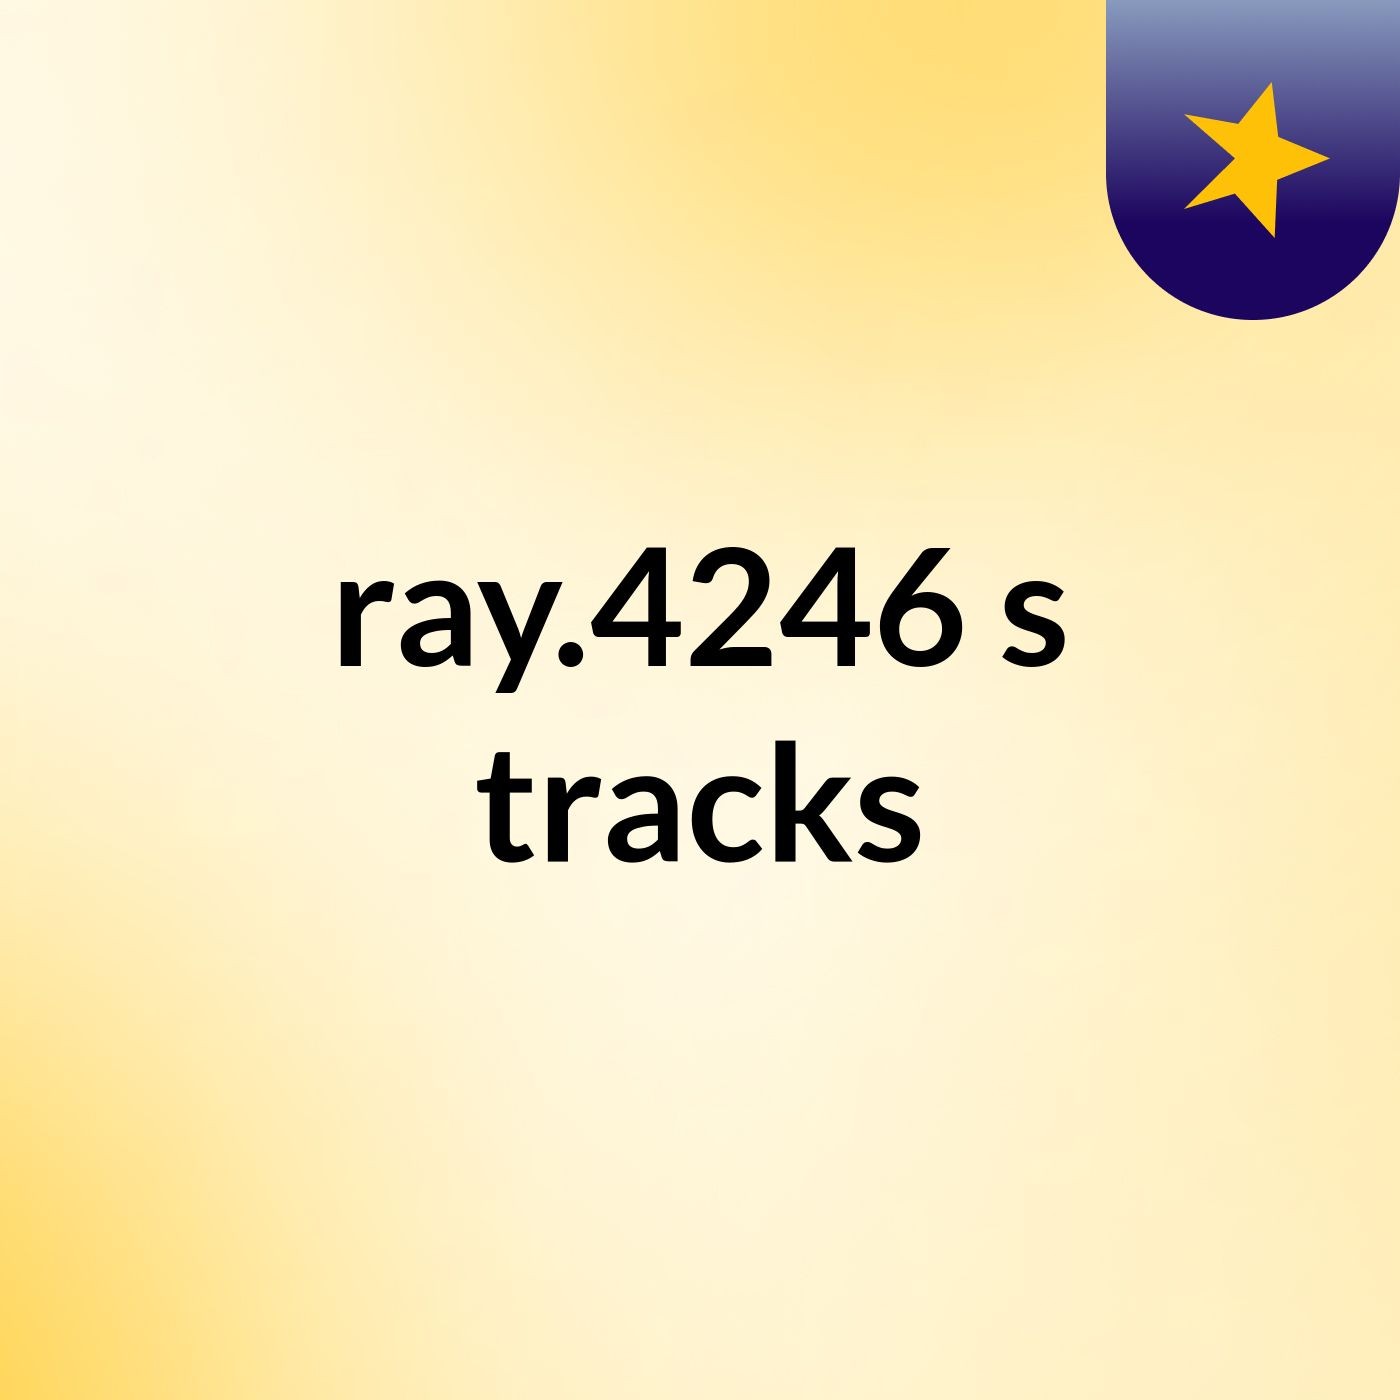 ray.4246's tracks